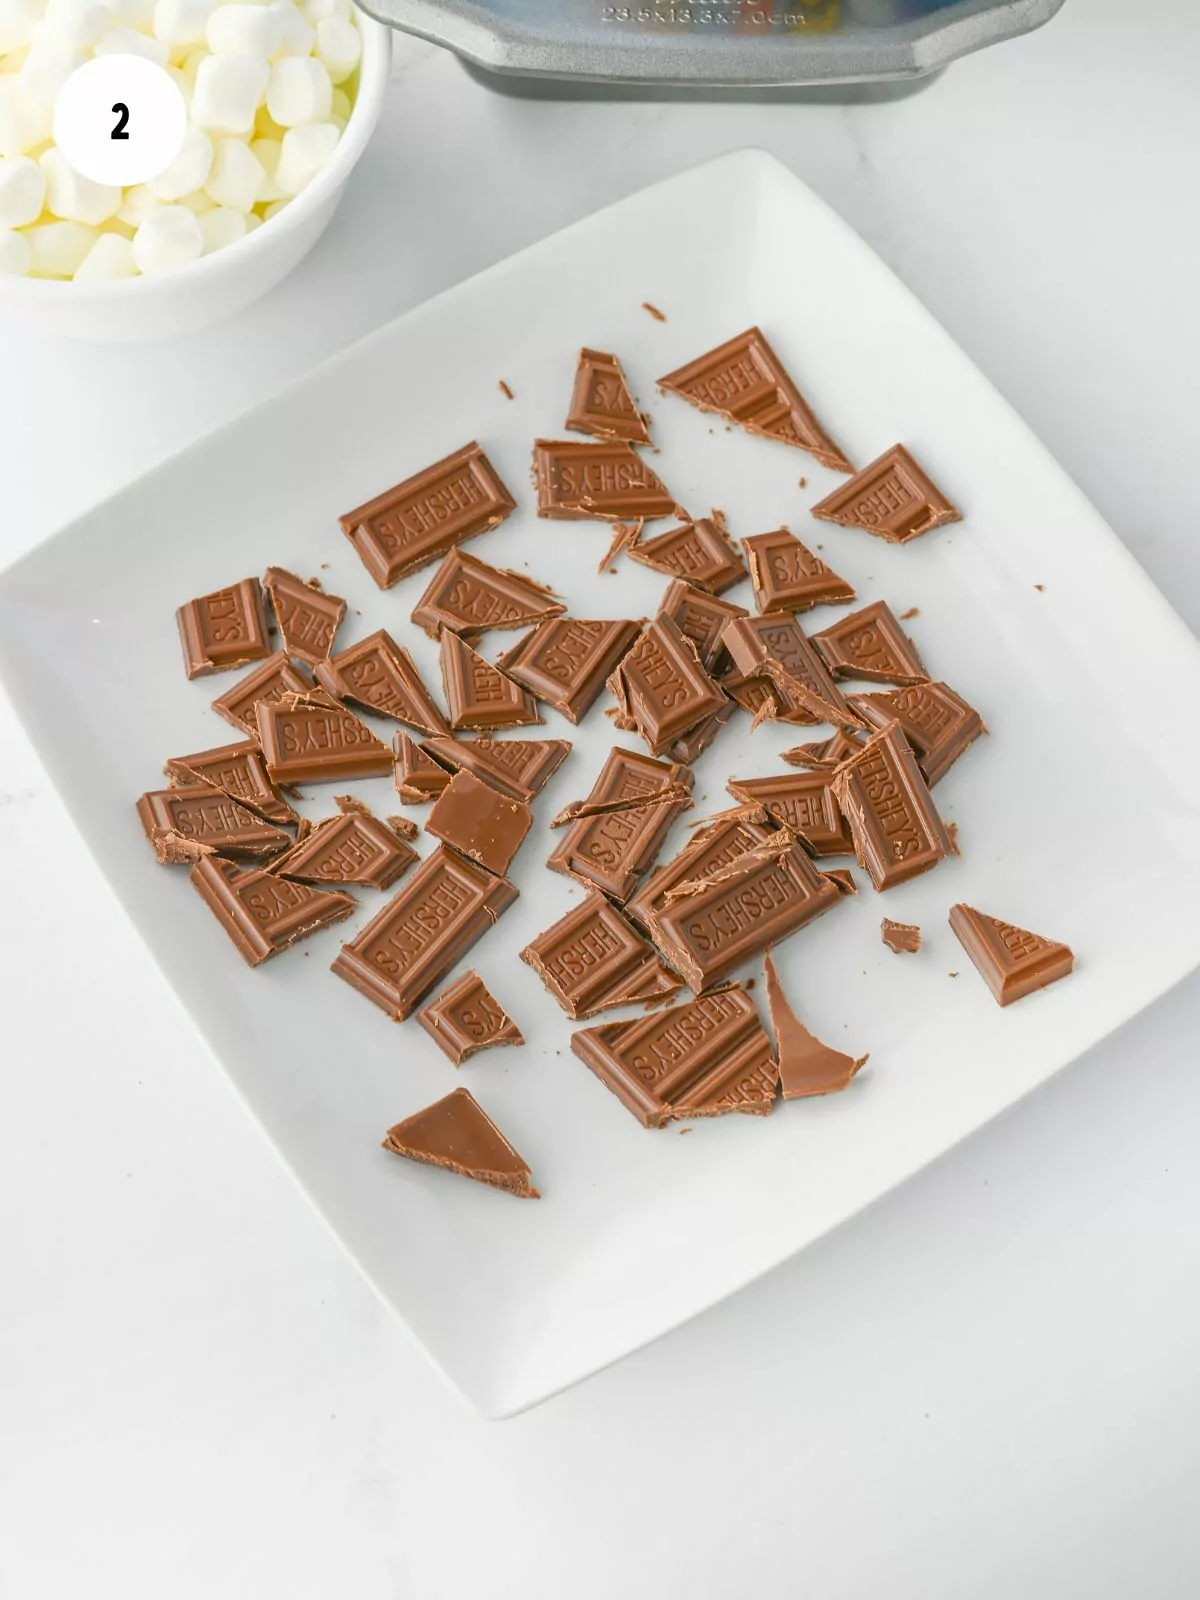 Chop chocolate bars into chunks